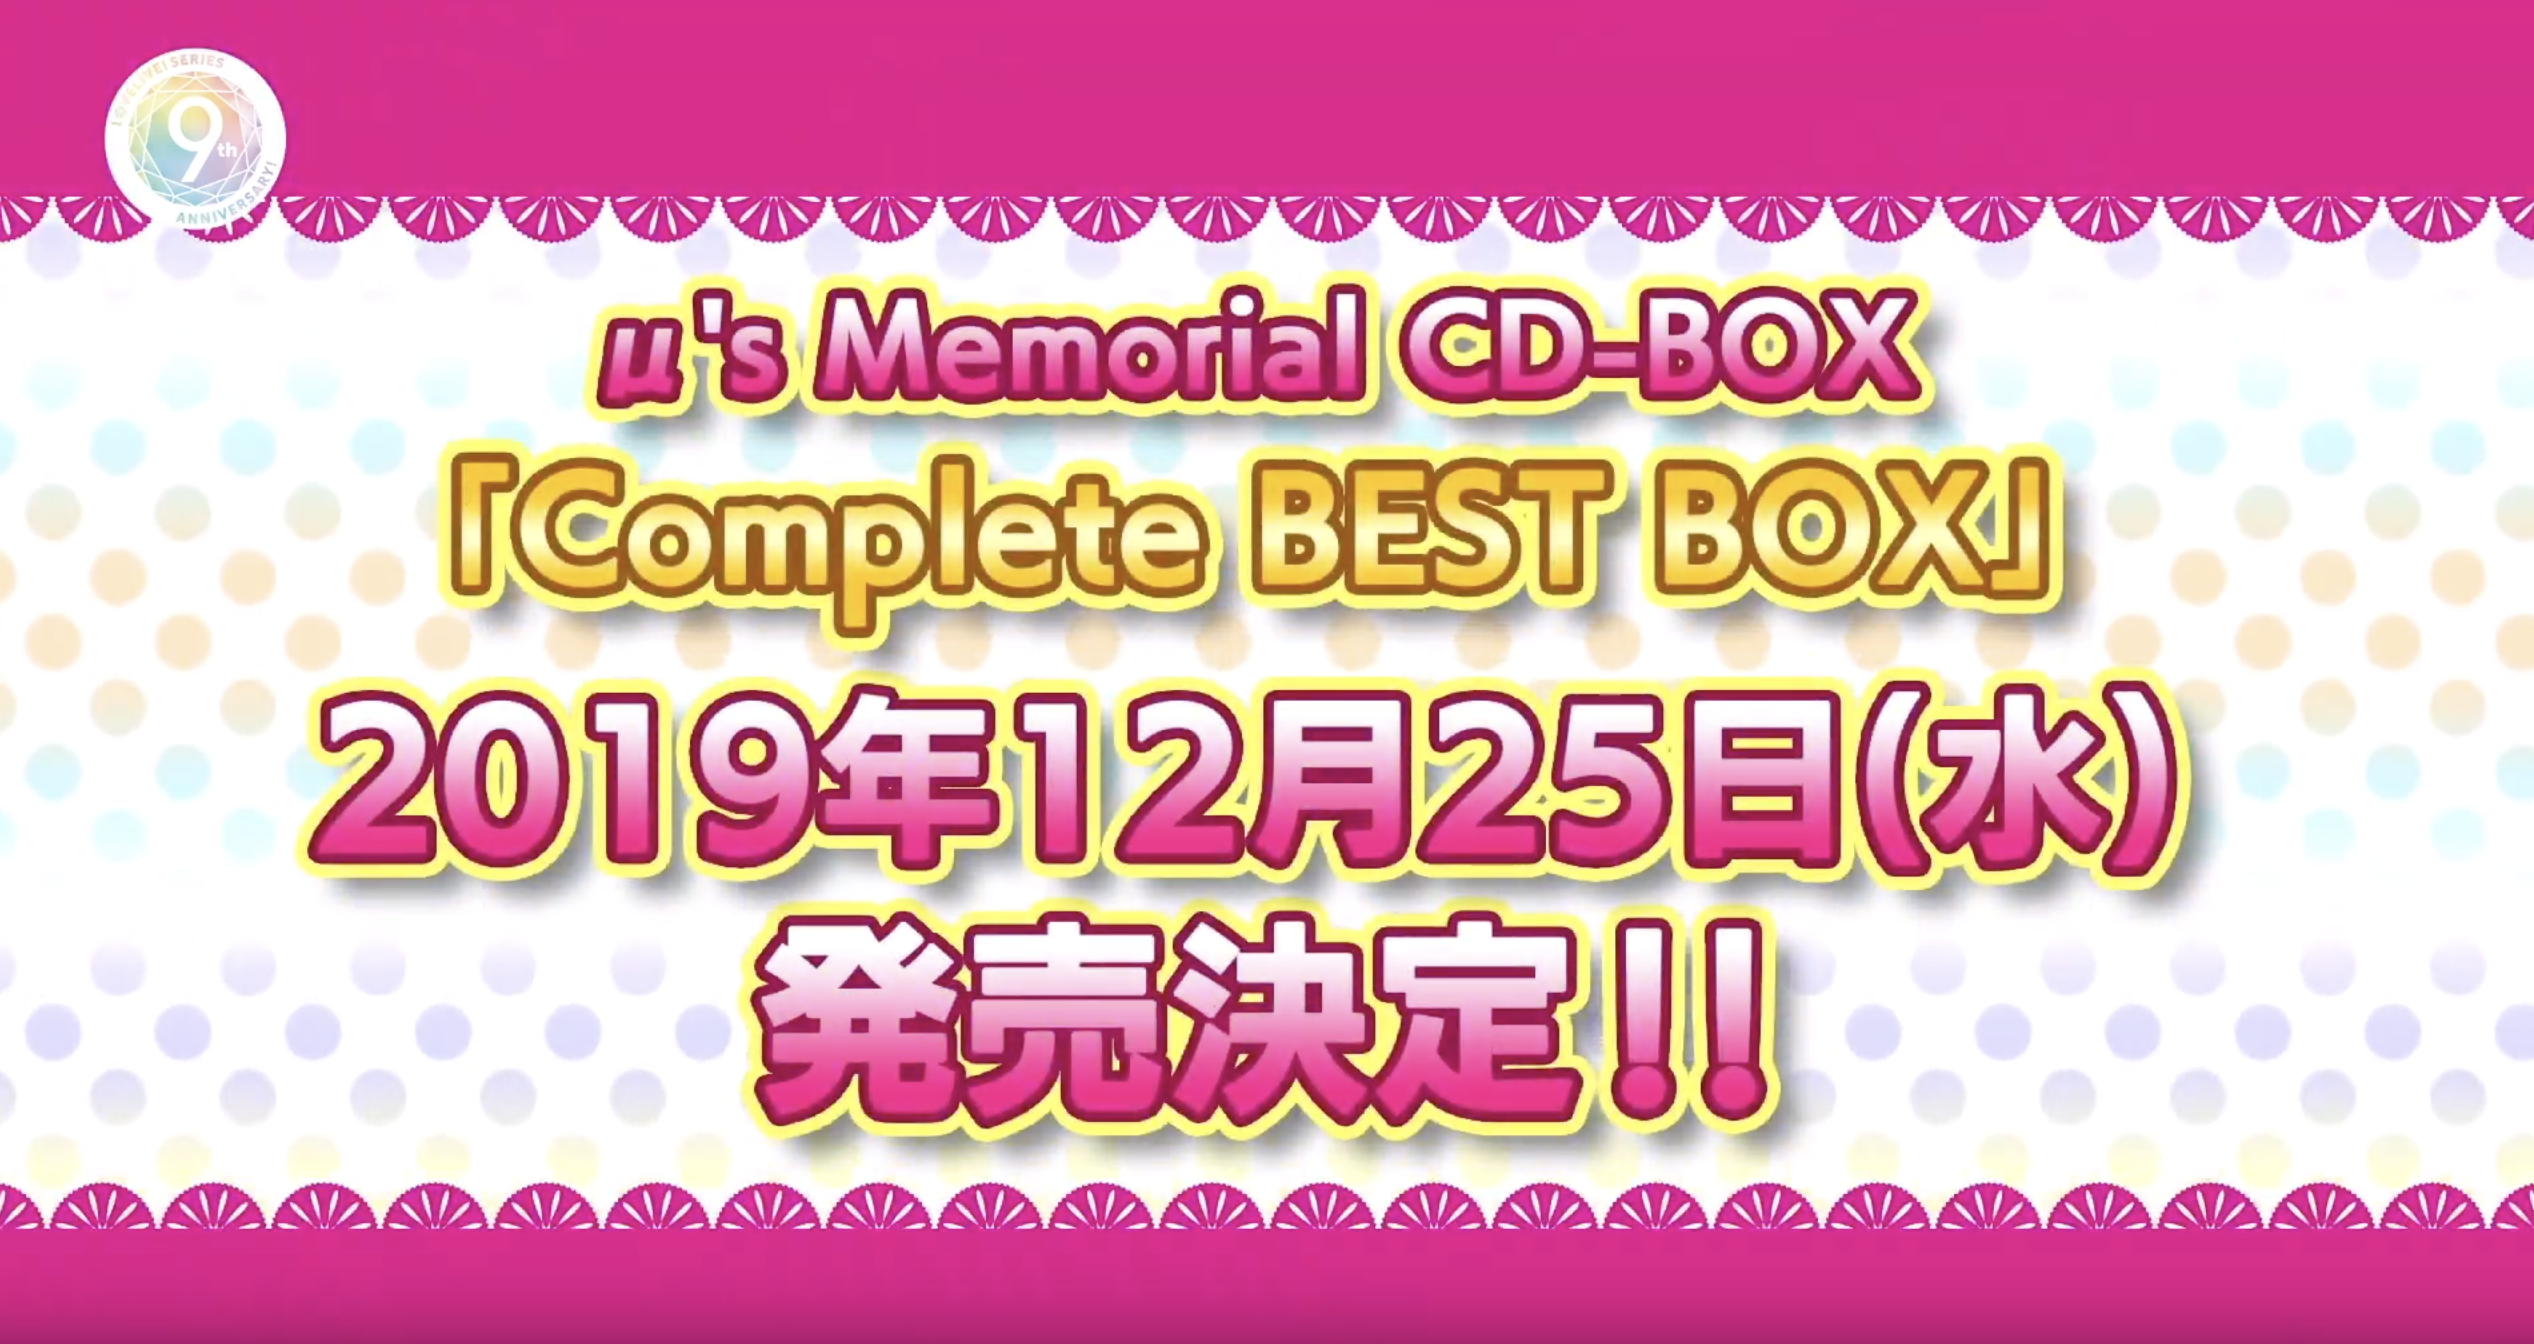 μ's Memorial CD-BOX Complete BEST BOXの特典・予約まとめ【ラブ 